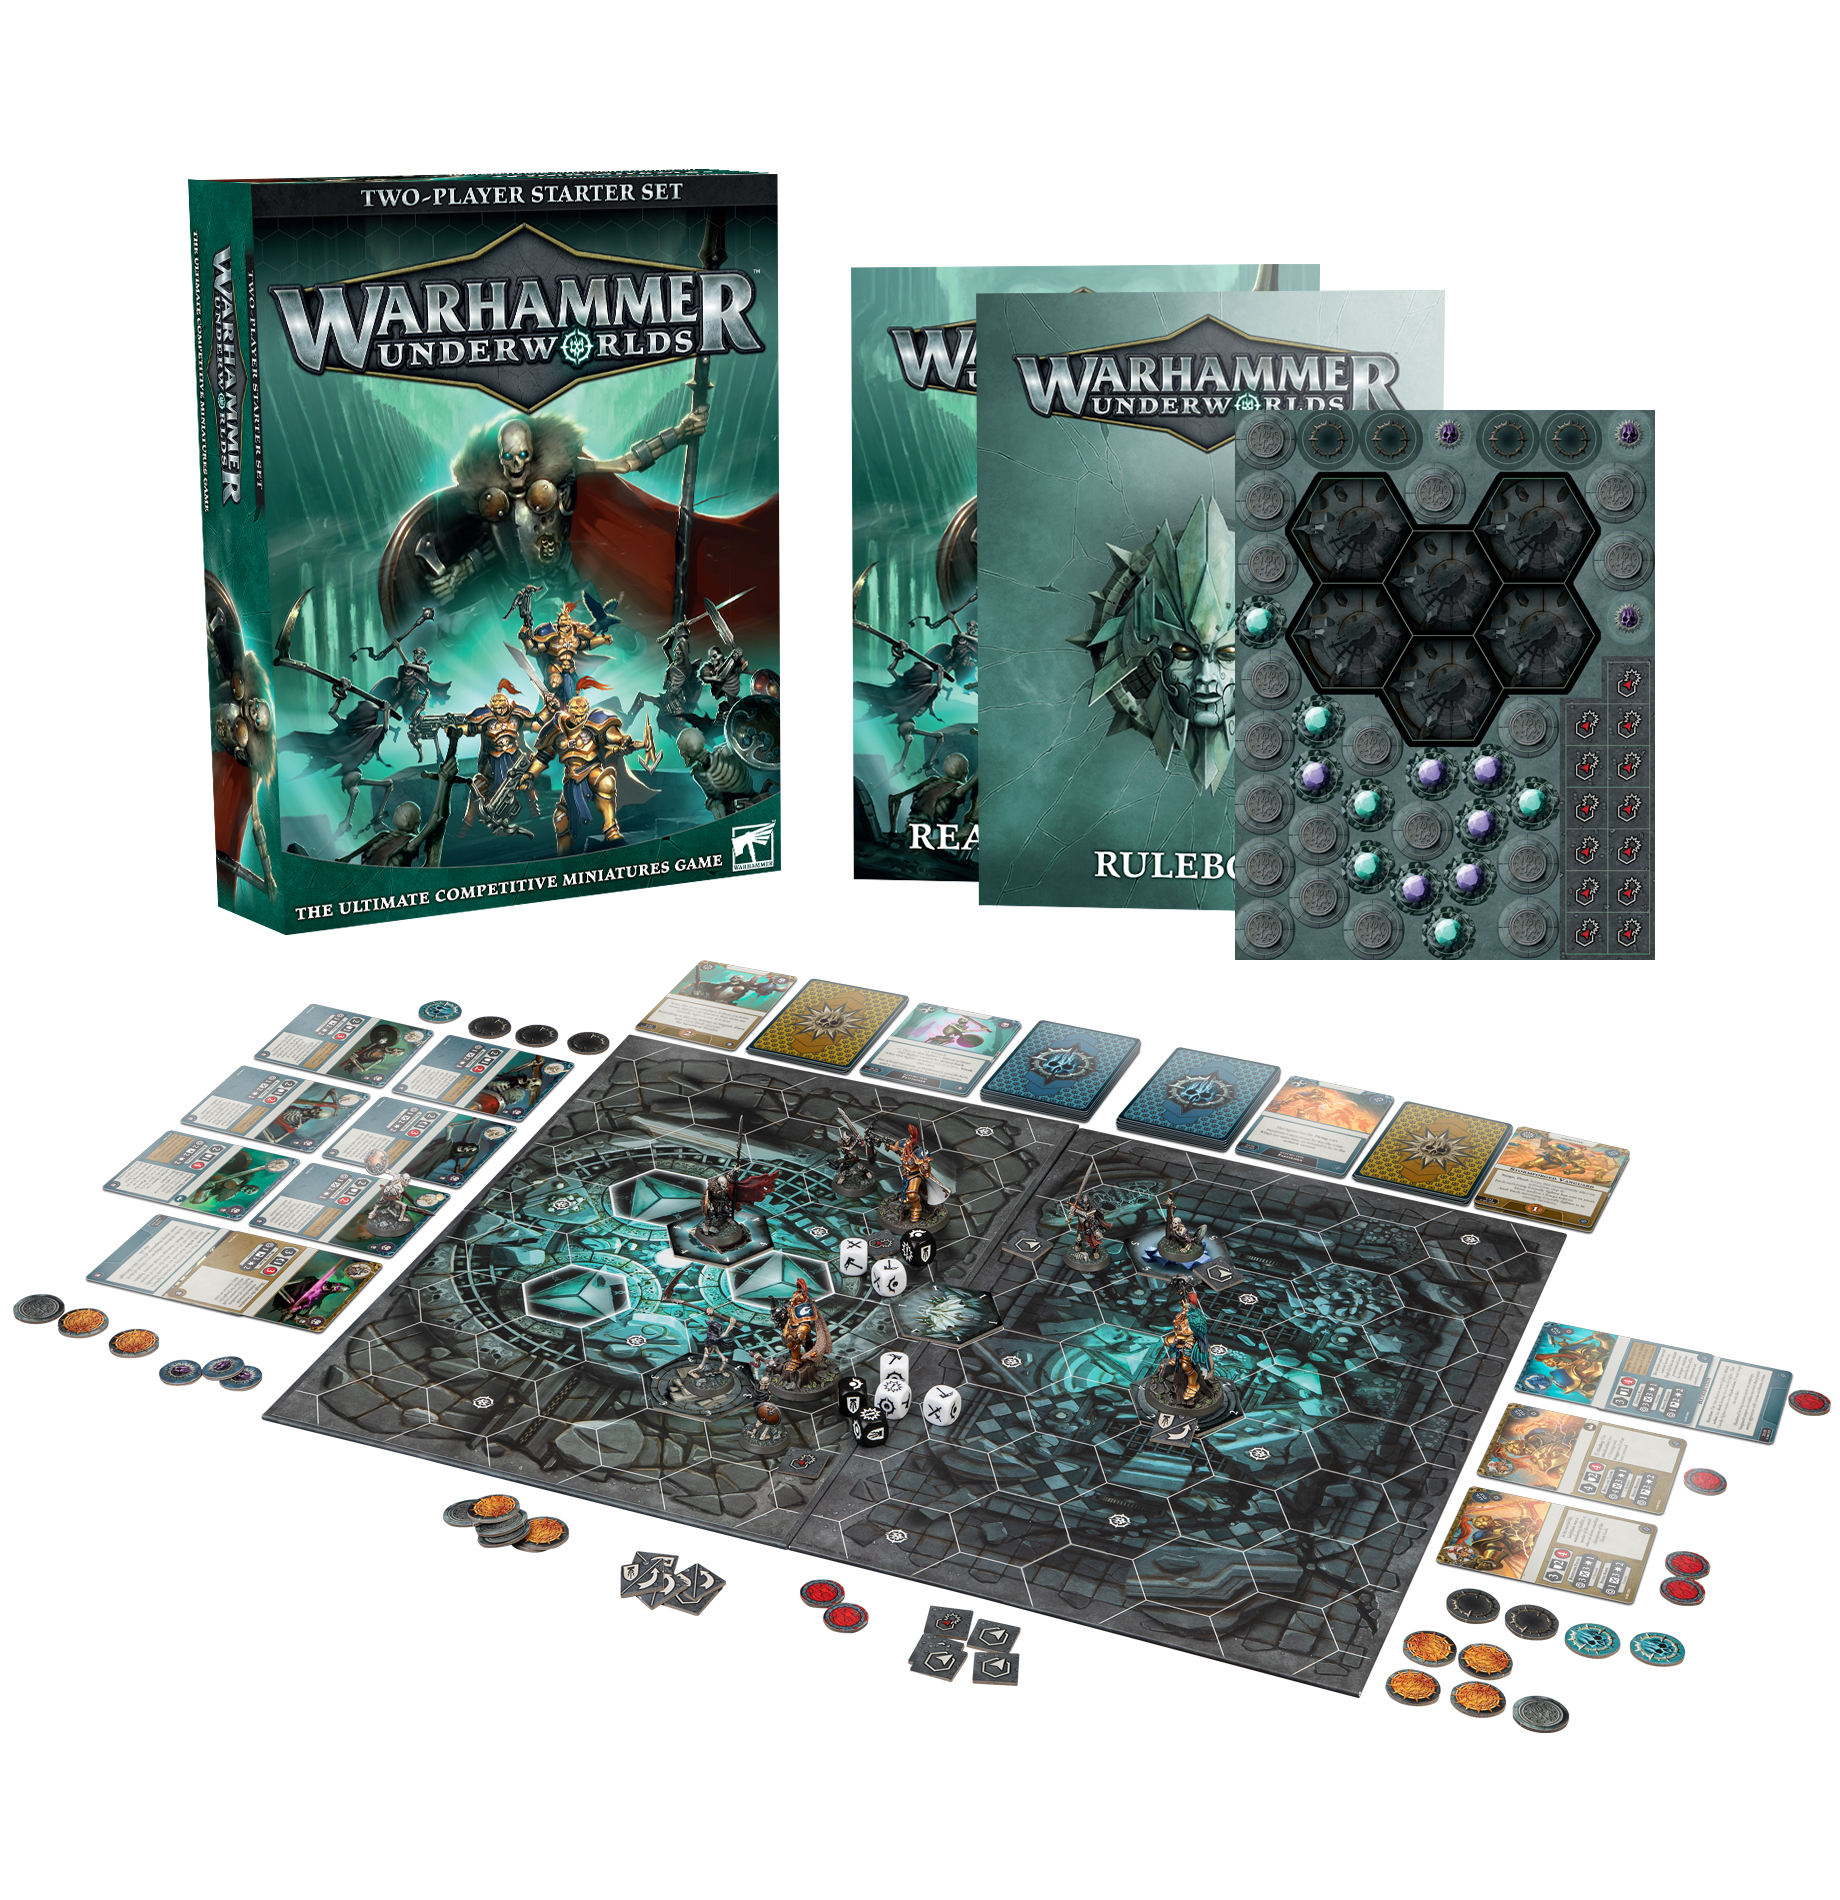 warhammer under worlds starter set contents